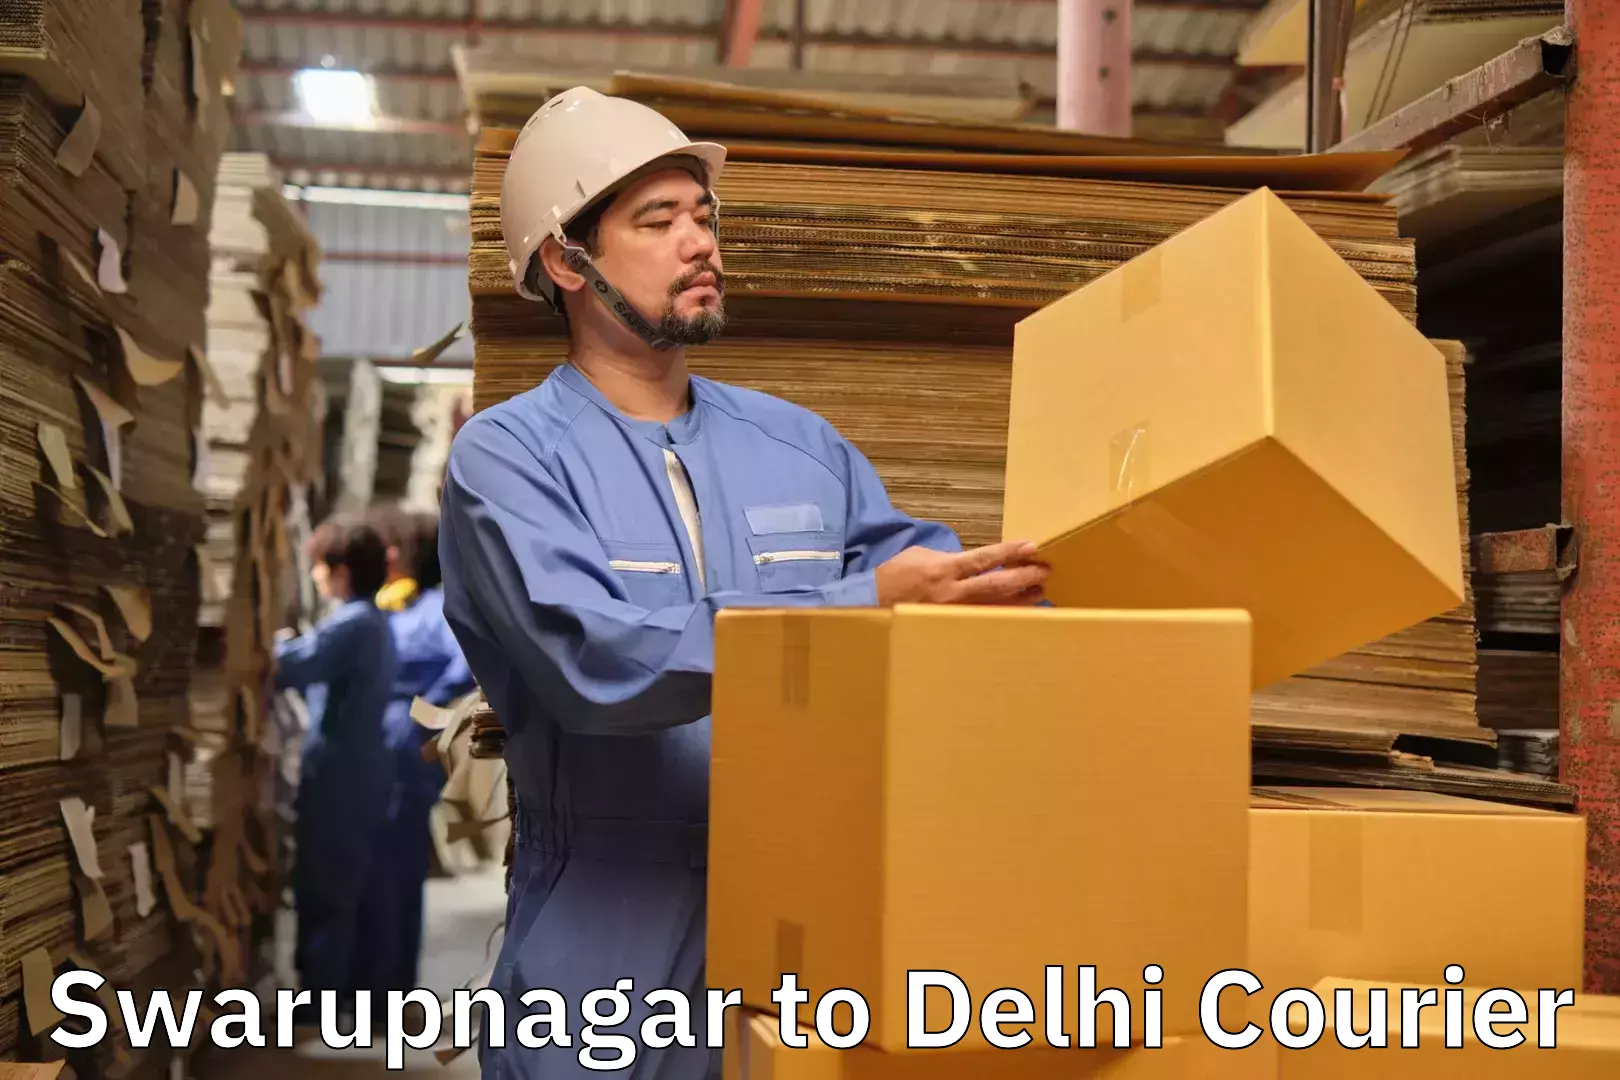 Luggage transport consultancy Swarupnagar to Delhi